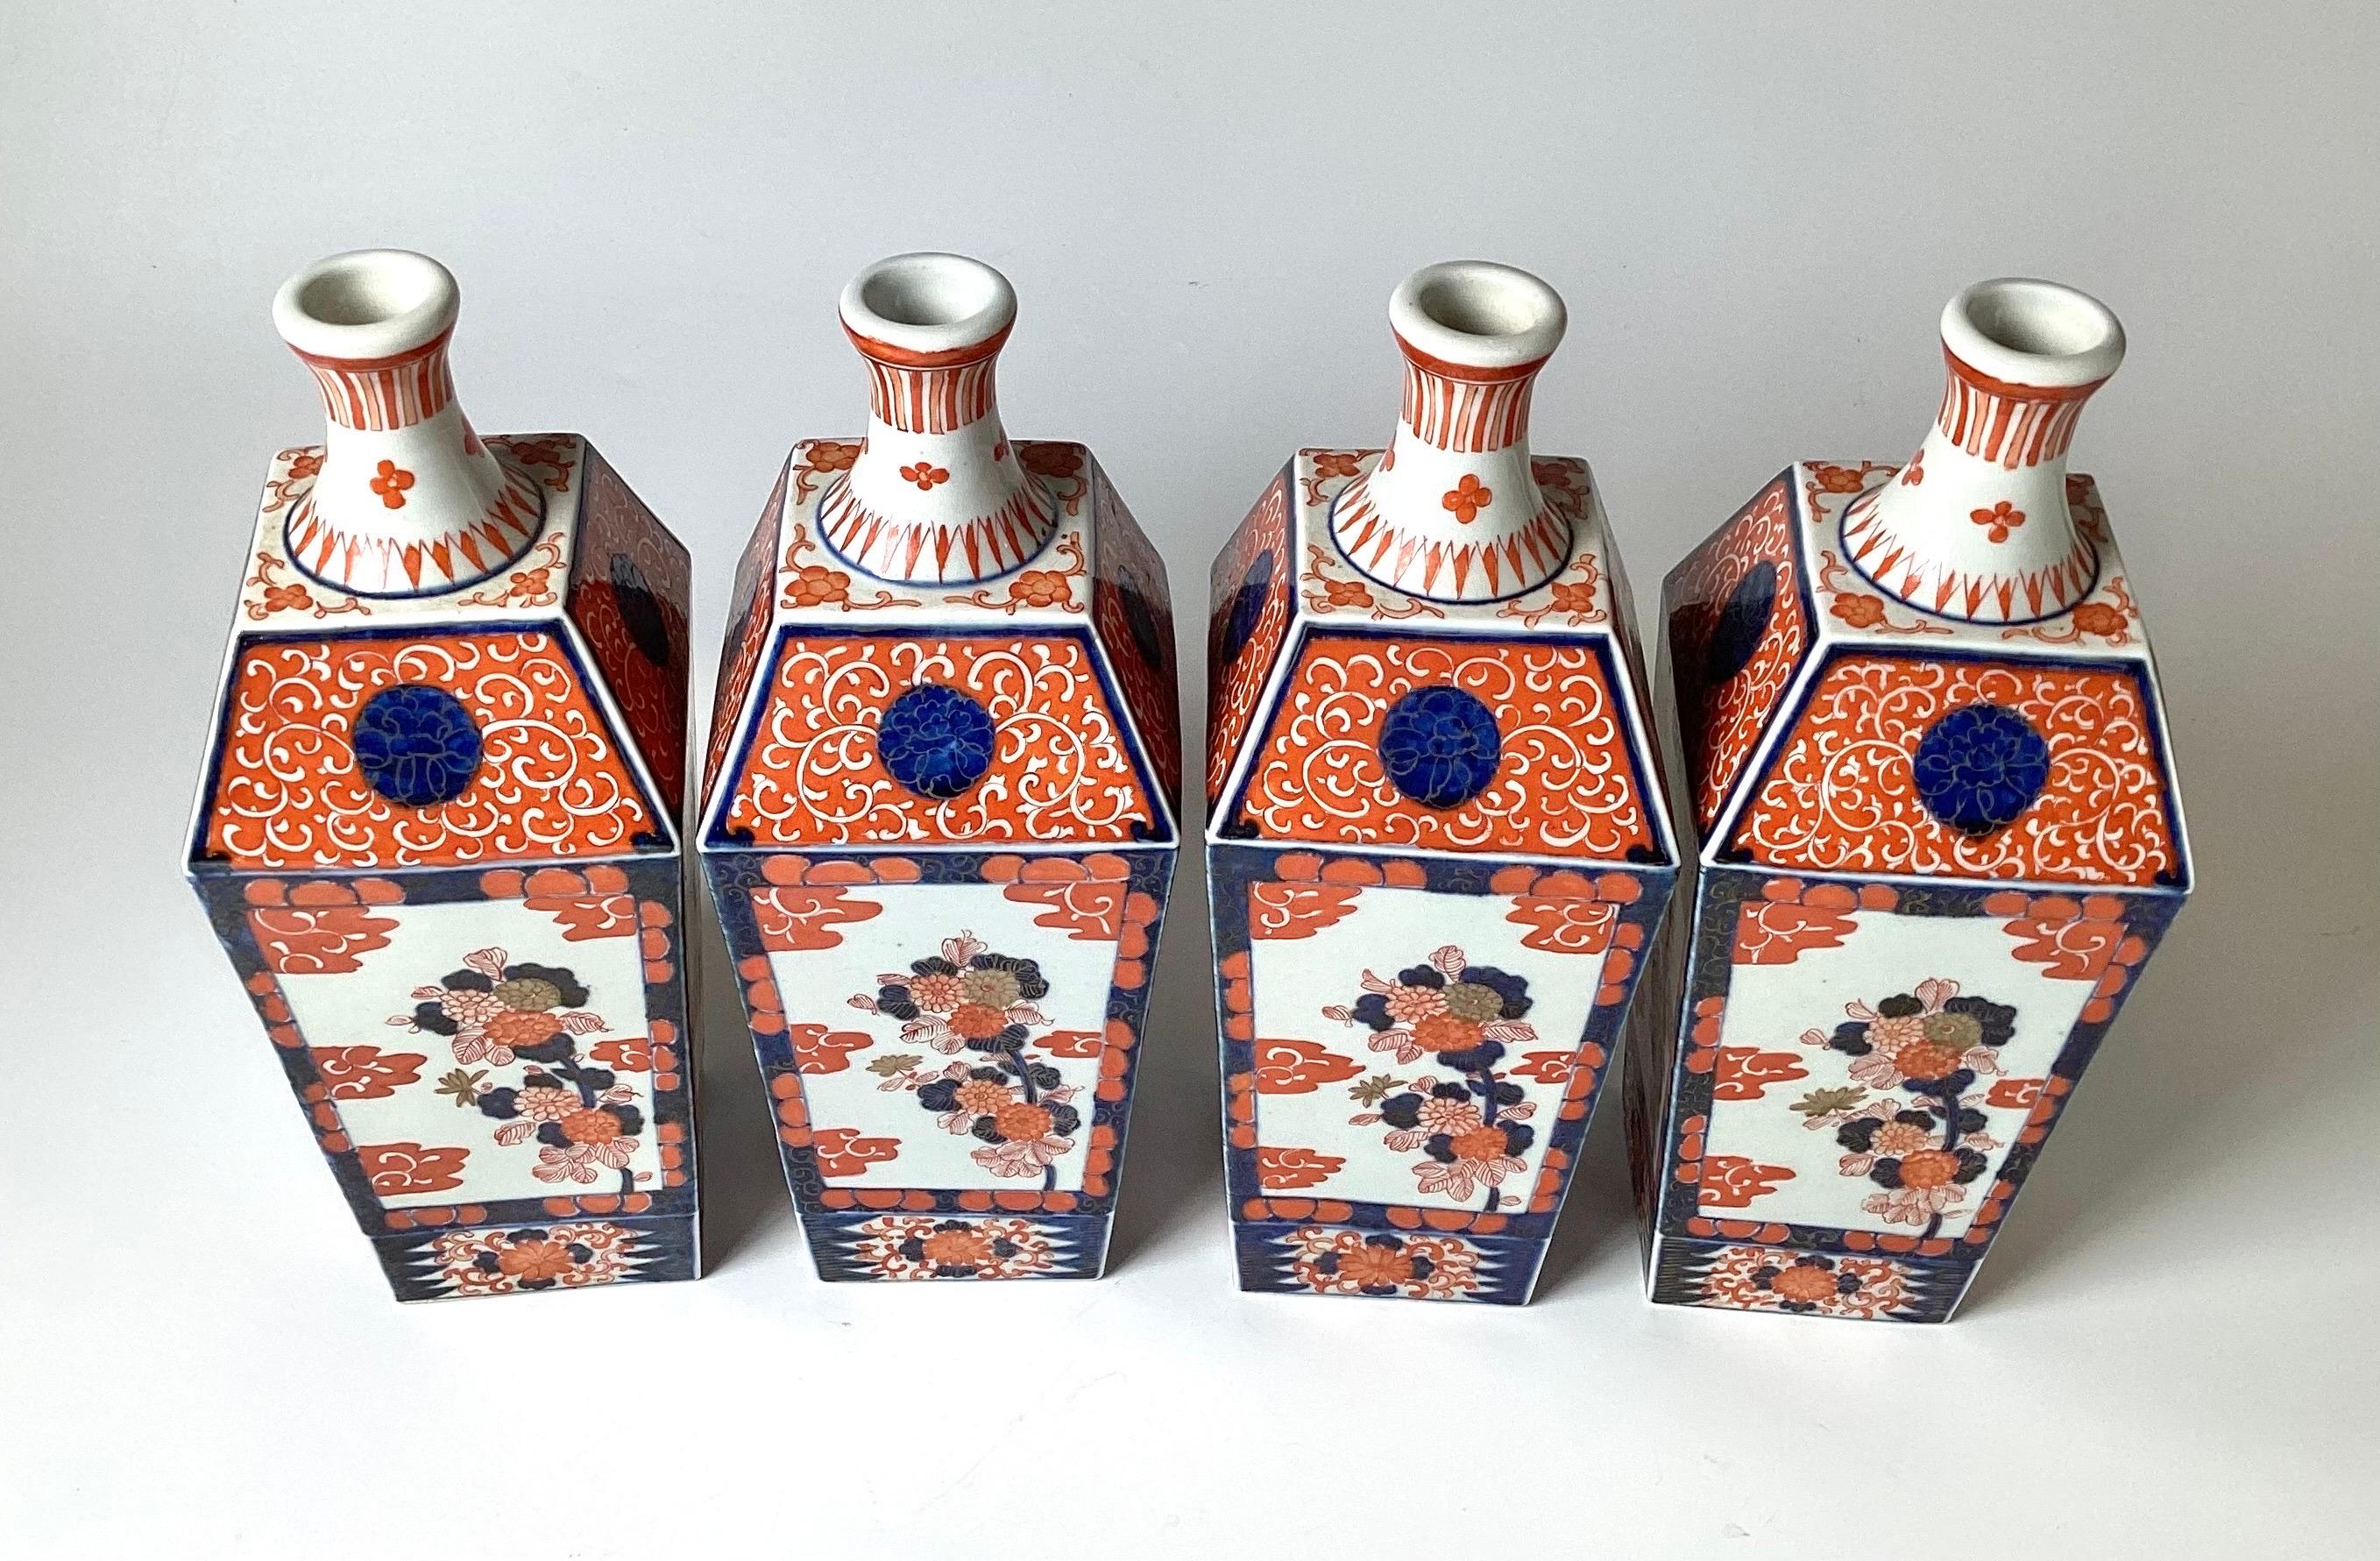 Ein seltener Satz von vier handbemalten japanischen Porzellanvasen in Form von Imari-Flaschen. Die Vasen haben eine quadratische, spitz zulaufende Form mit klassischem Imari-Dekor in Eisenrot und Kobaltblau auf weiß glasiertem Porzellan. Diese sind